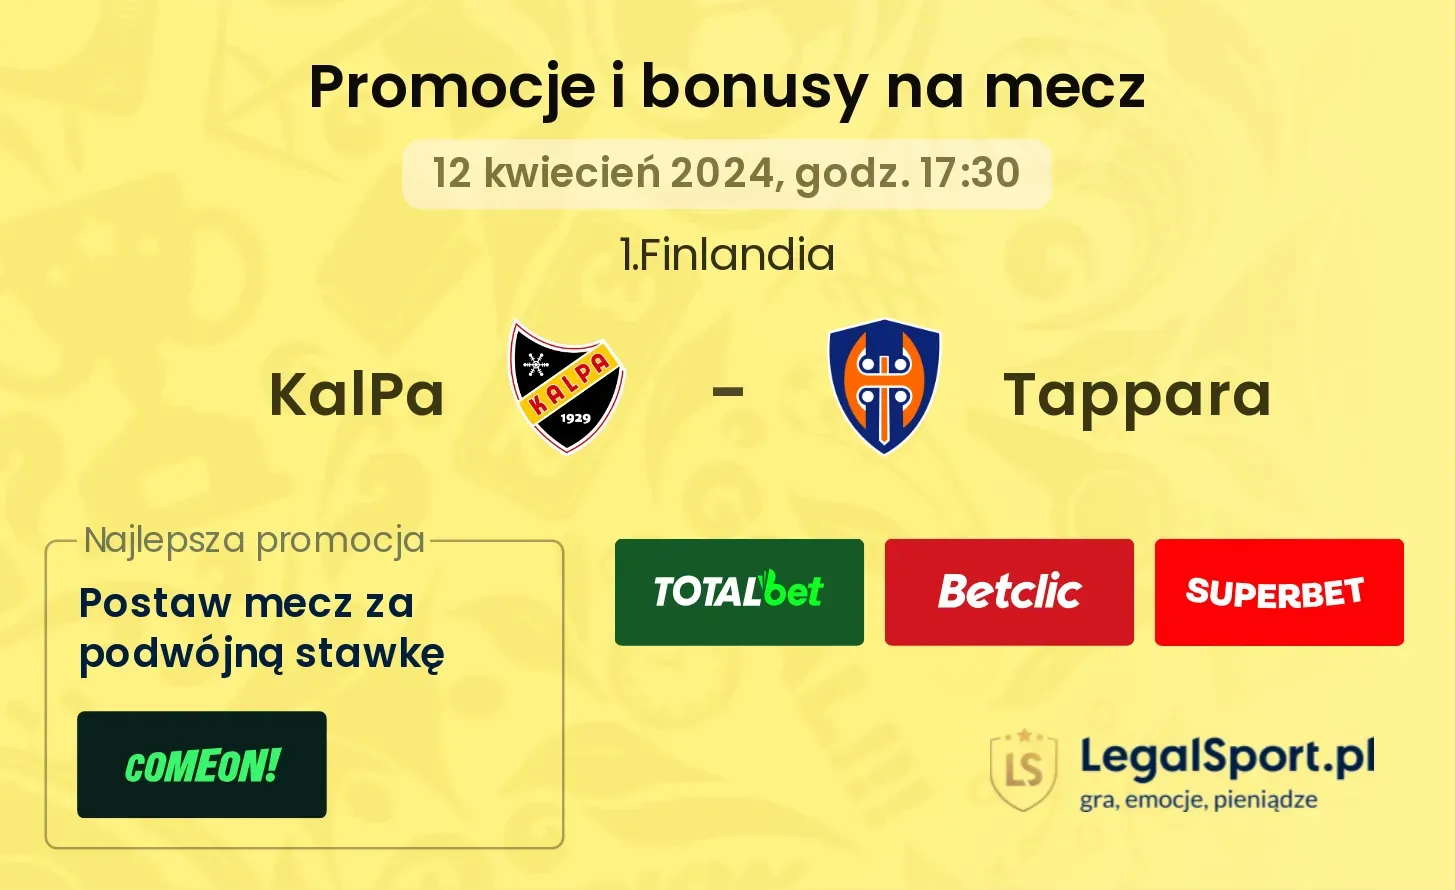 KalPa - Tappara promocje bonusy na mecz